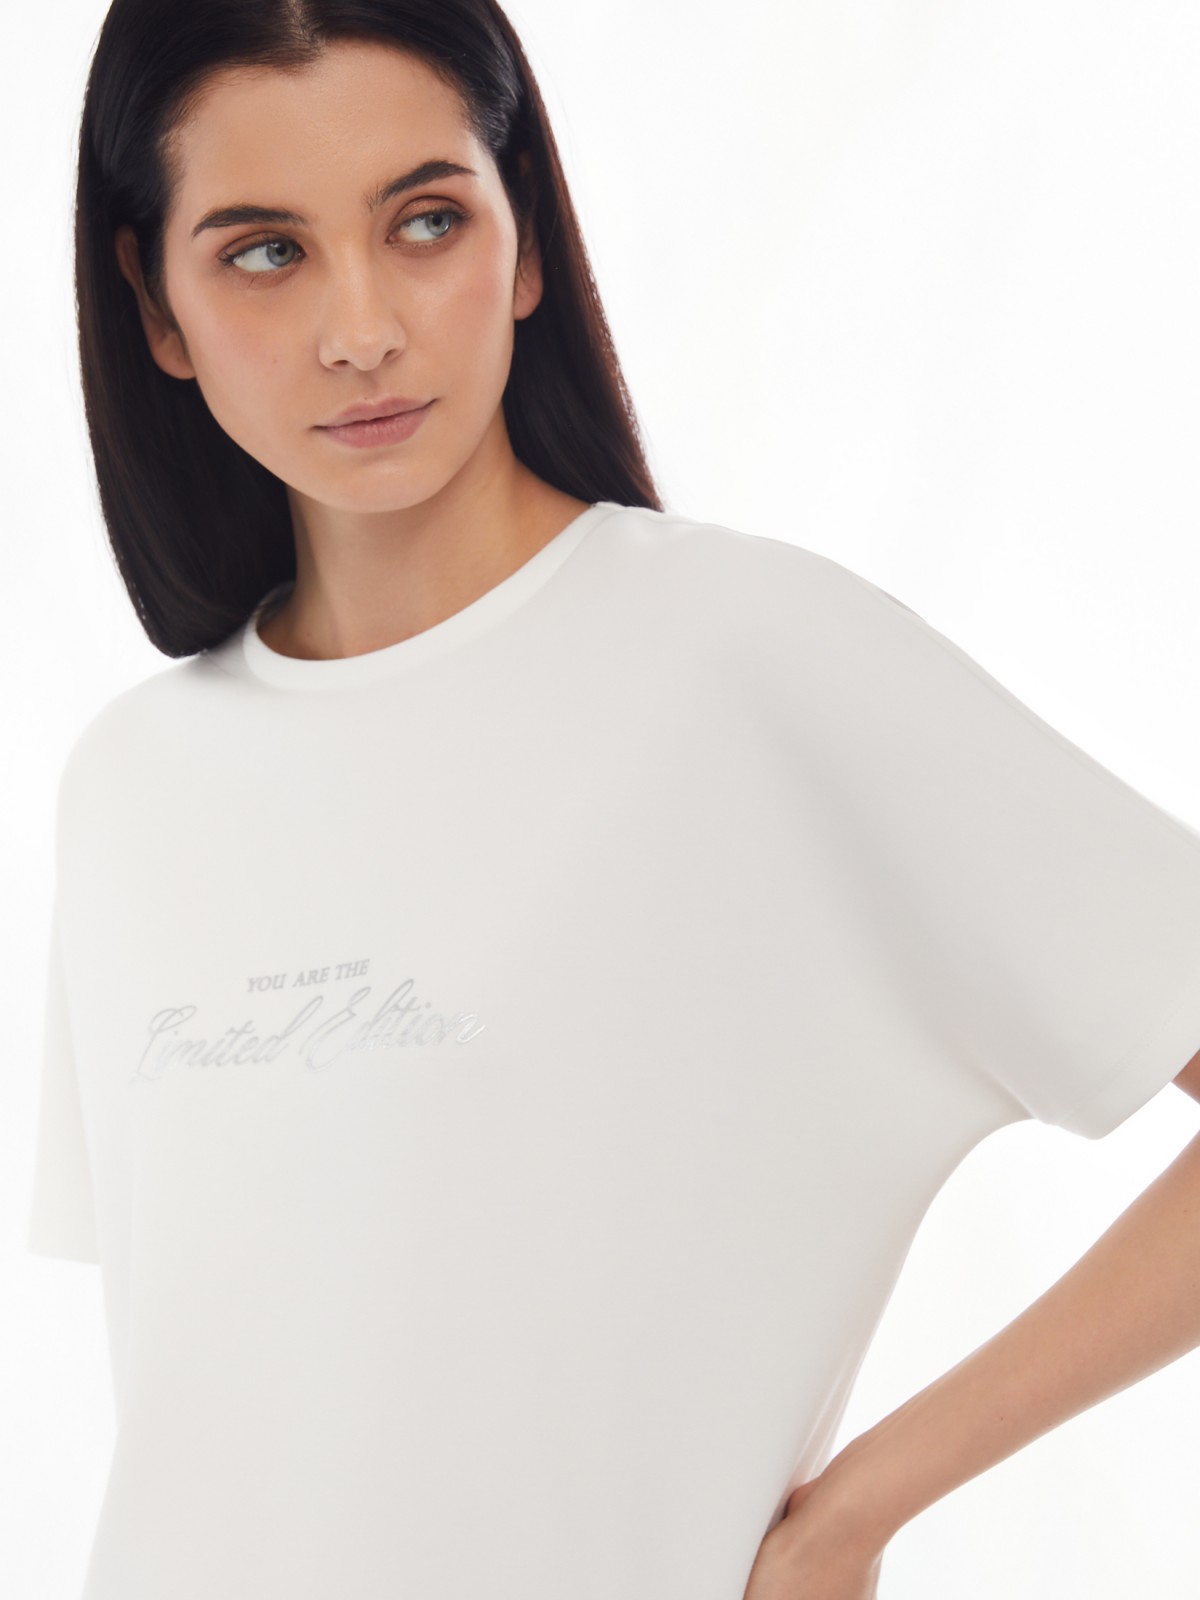 Блузка-футболка из неопрена с принтом-надписью zolla 024133210243, цвет молоко, размер XS - фото 5